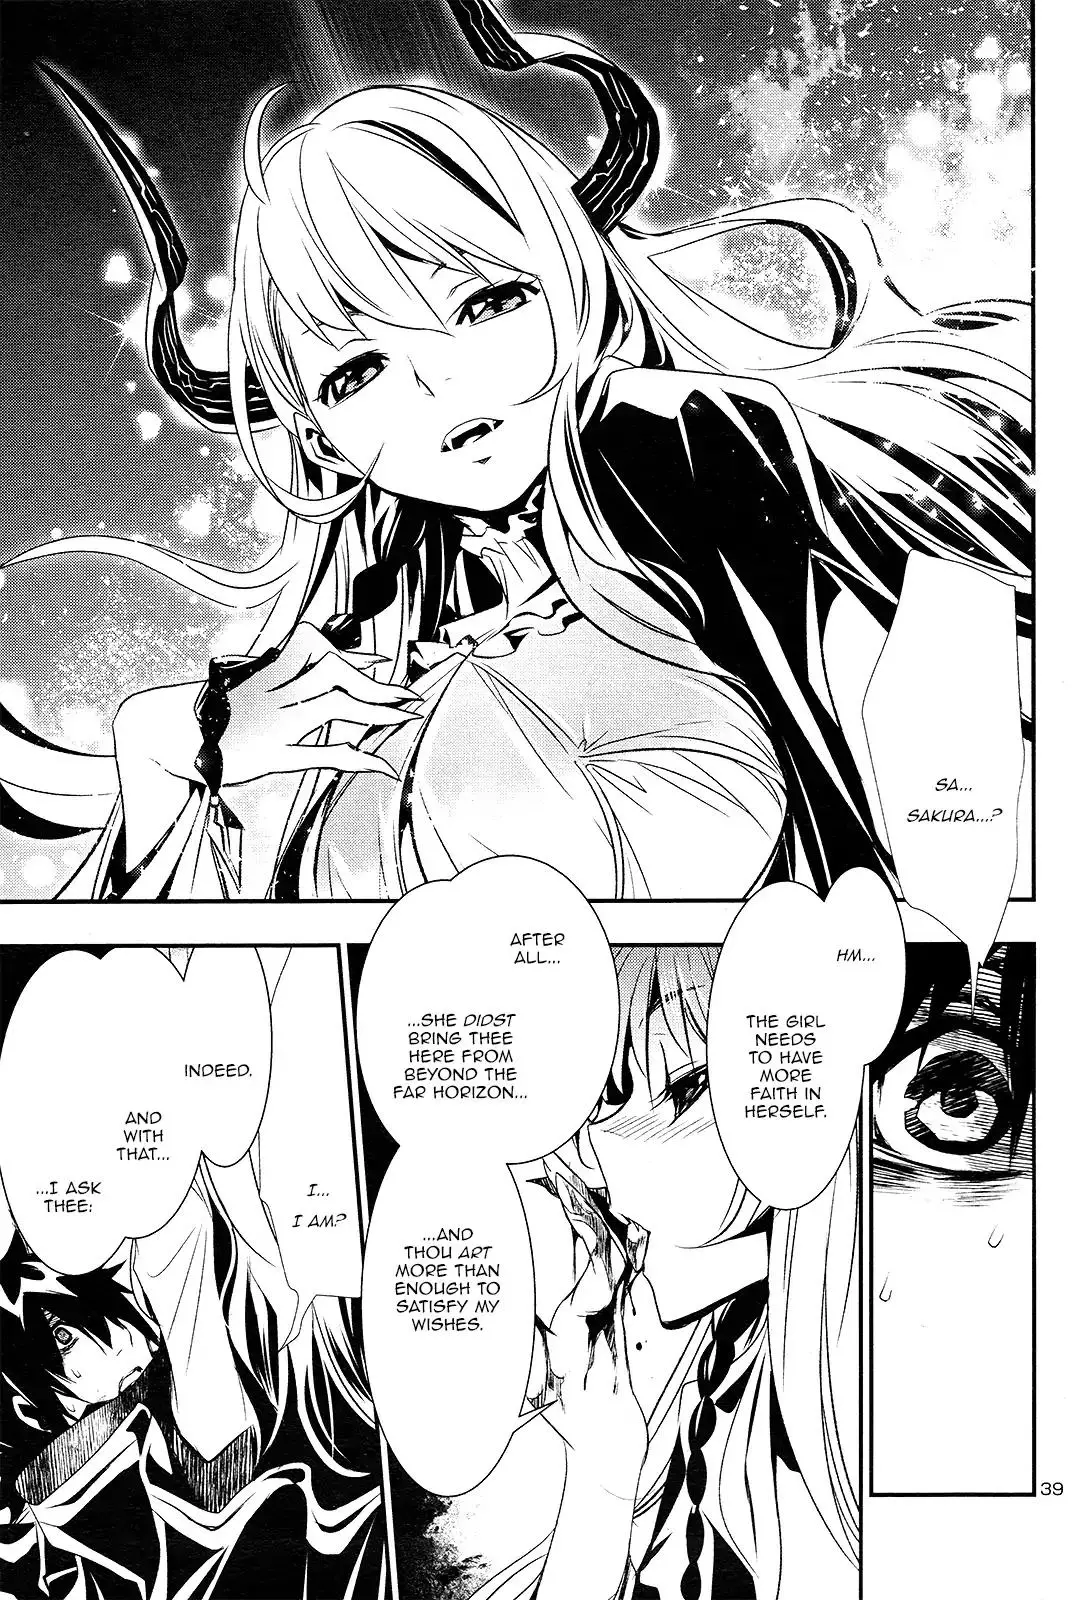 Shinju no Nectar - 1 page 39